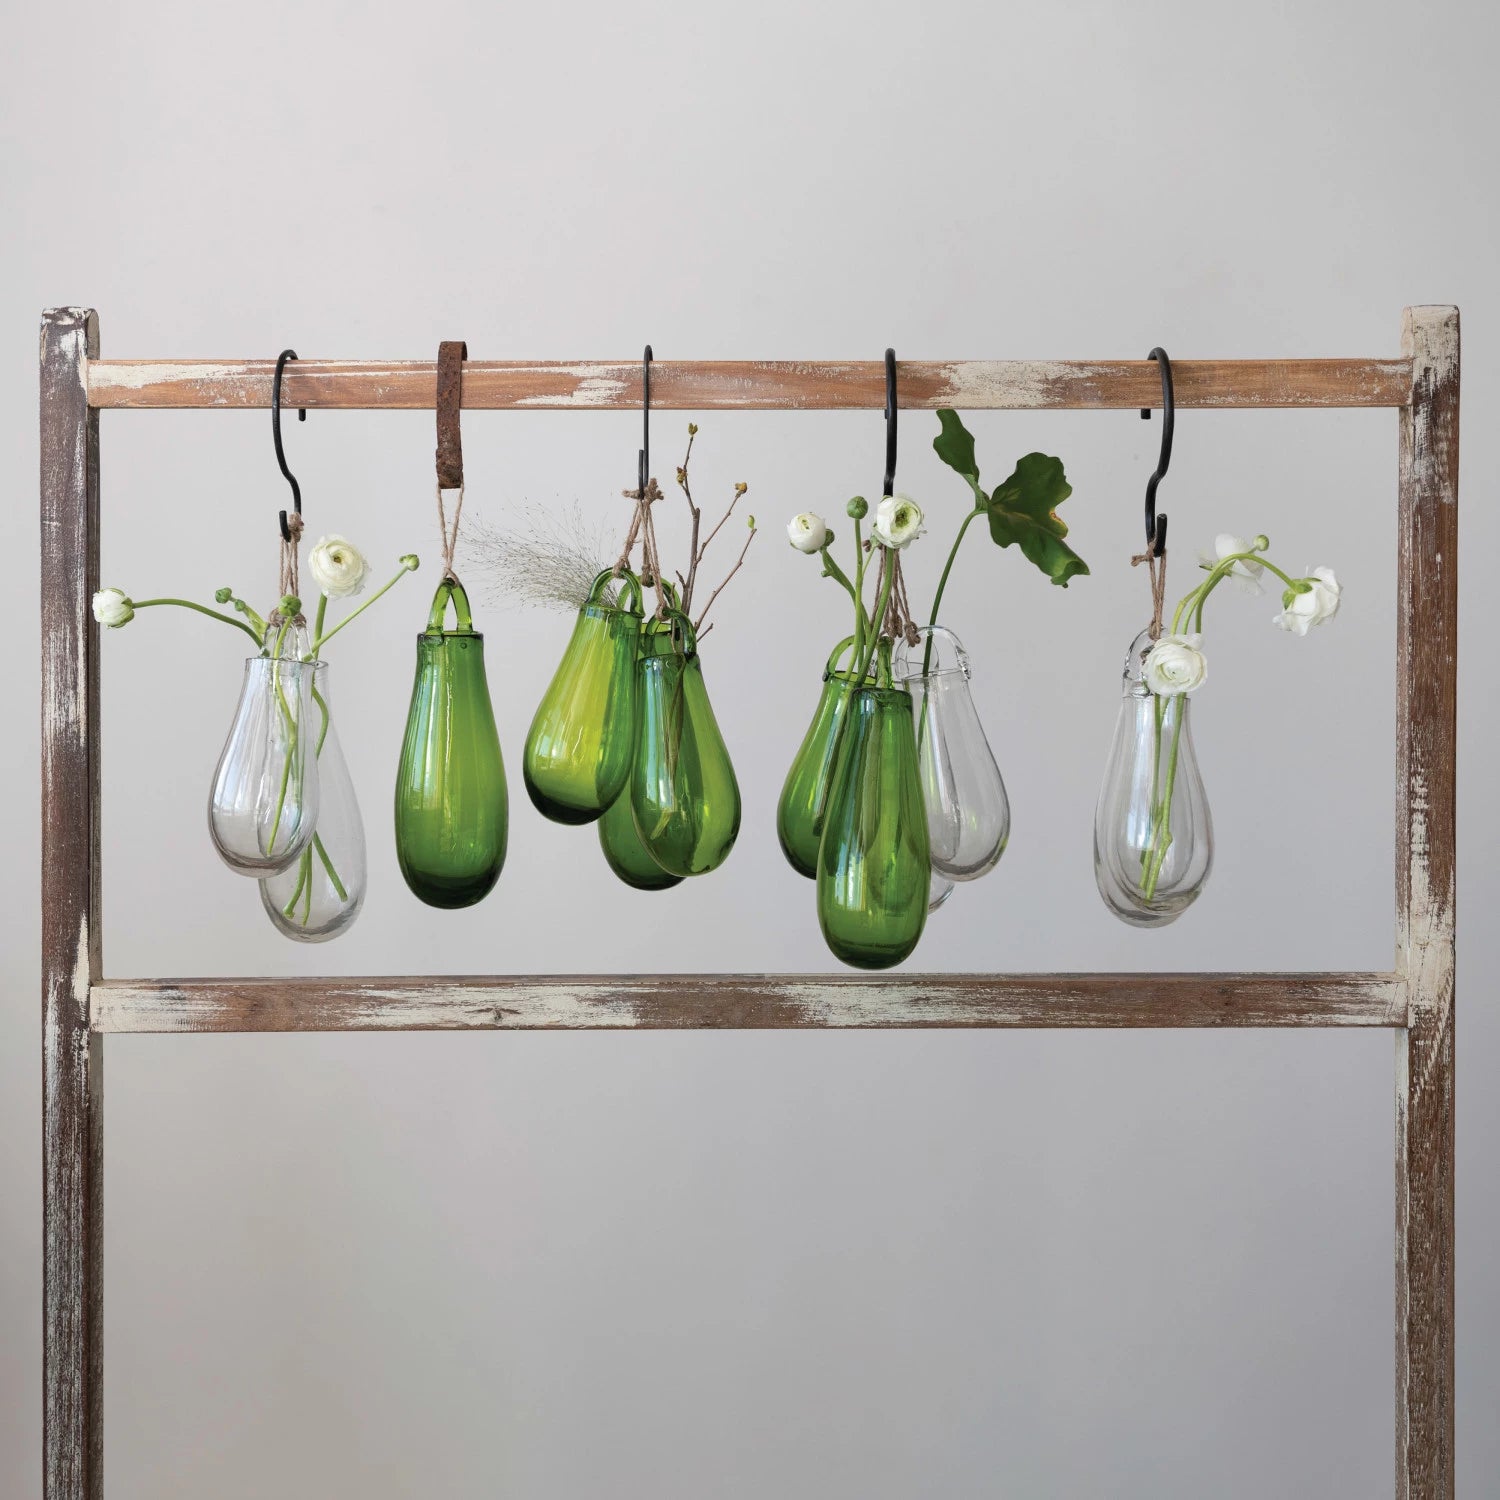 8.25" Hanging Glass Vase - Grn